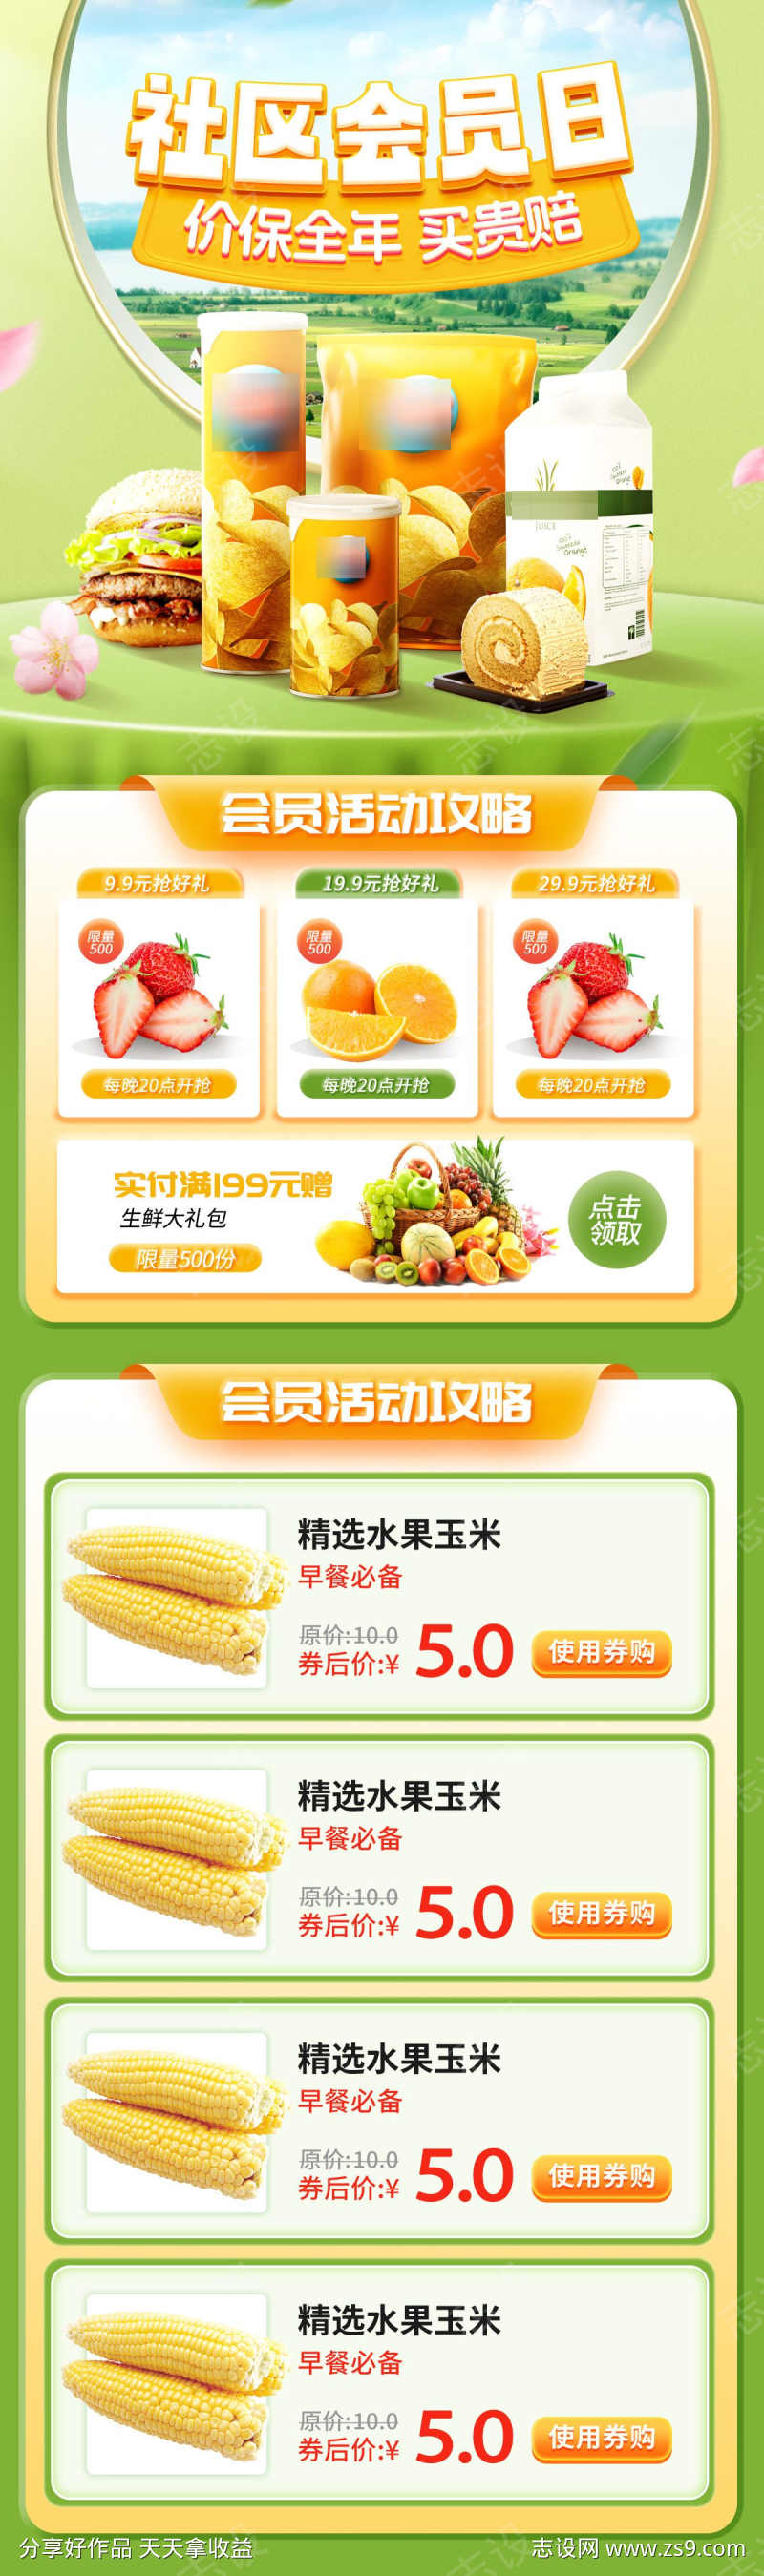 超市水果生鲜团购会员日长图海报